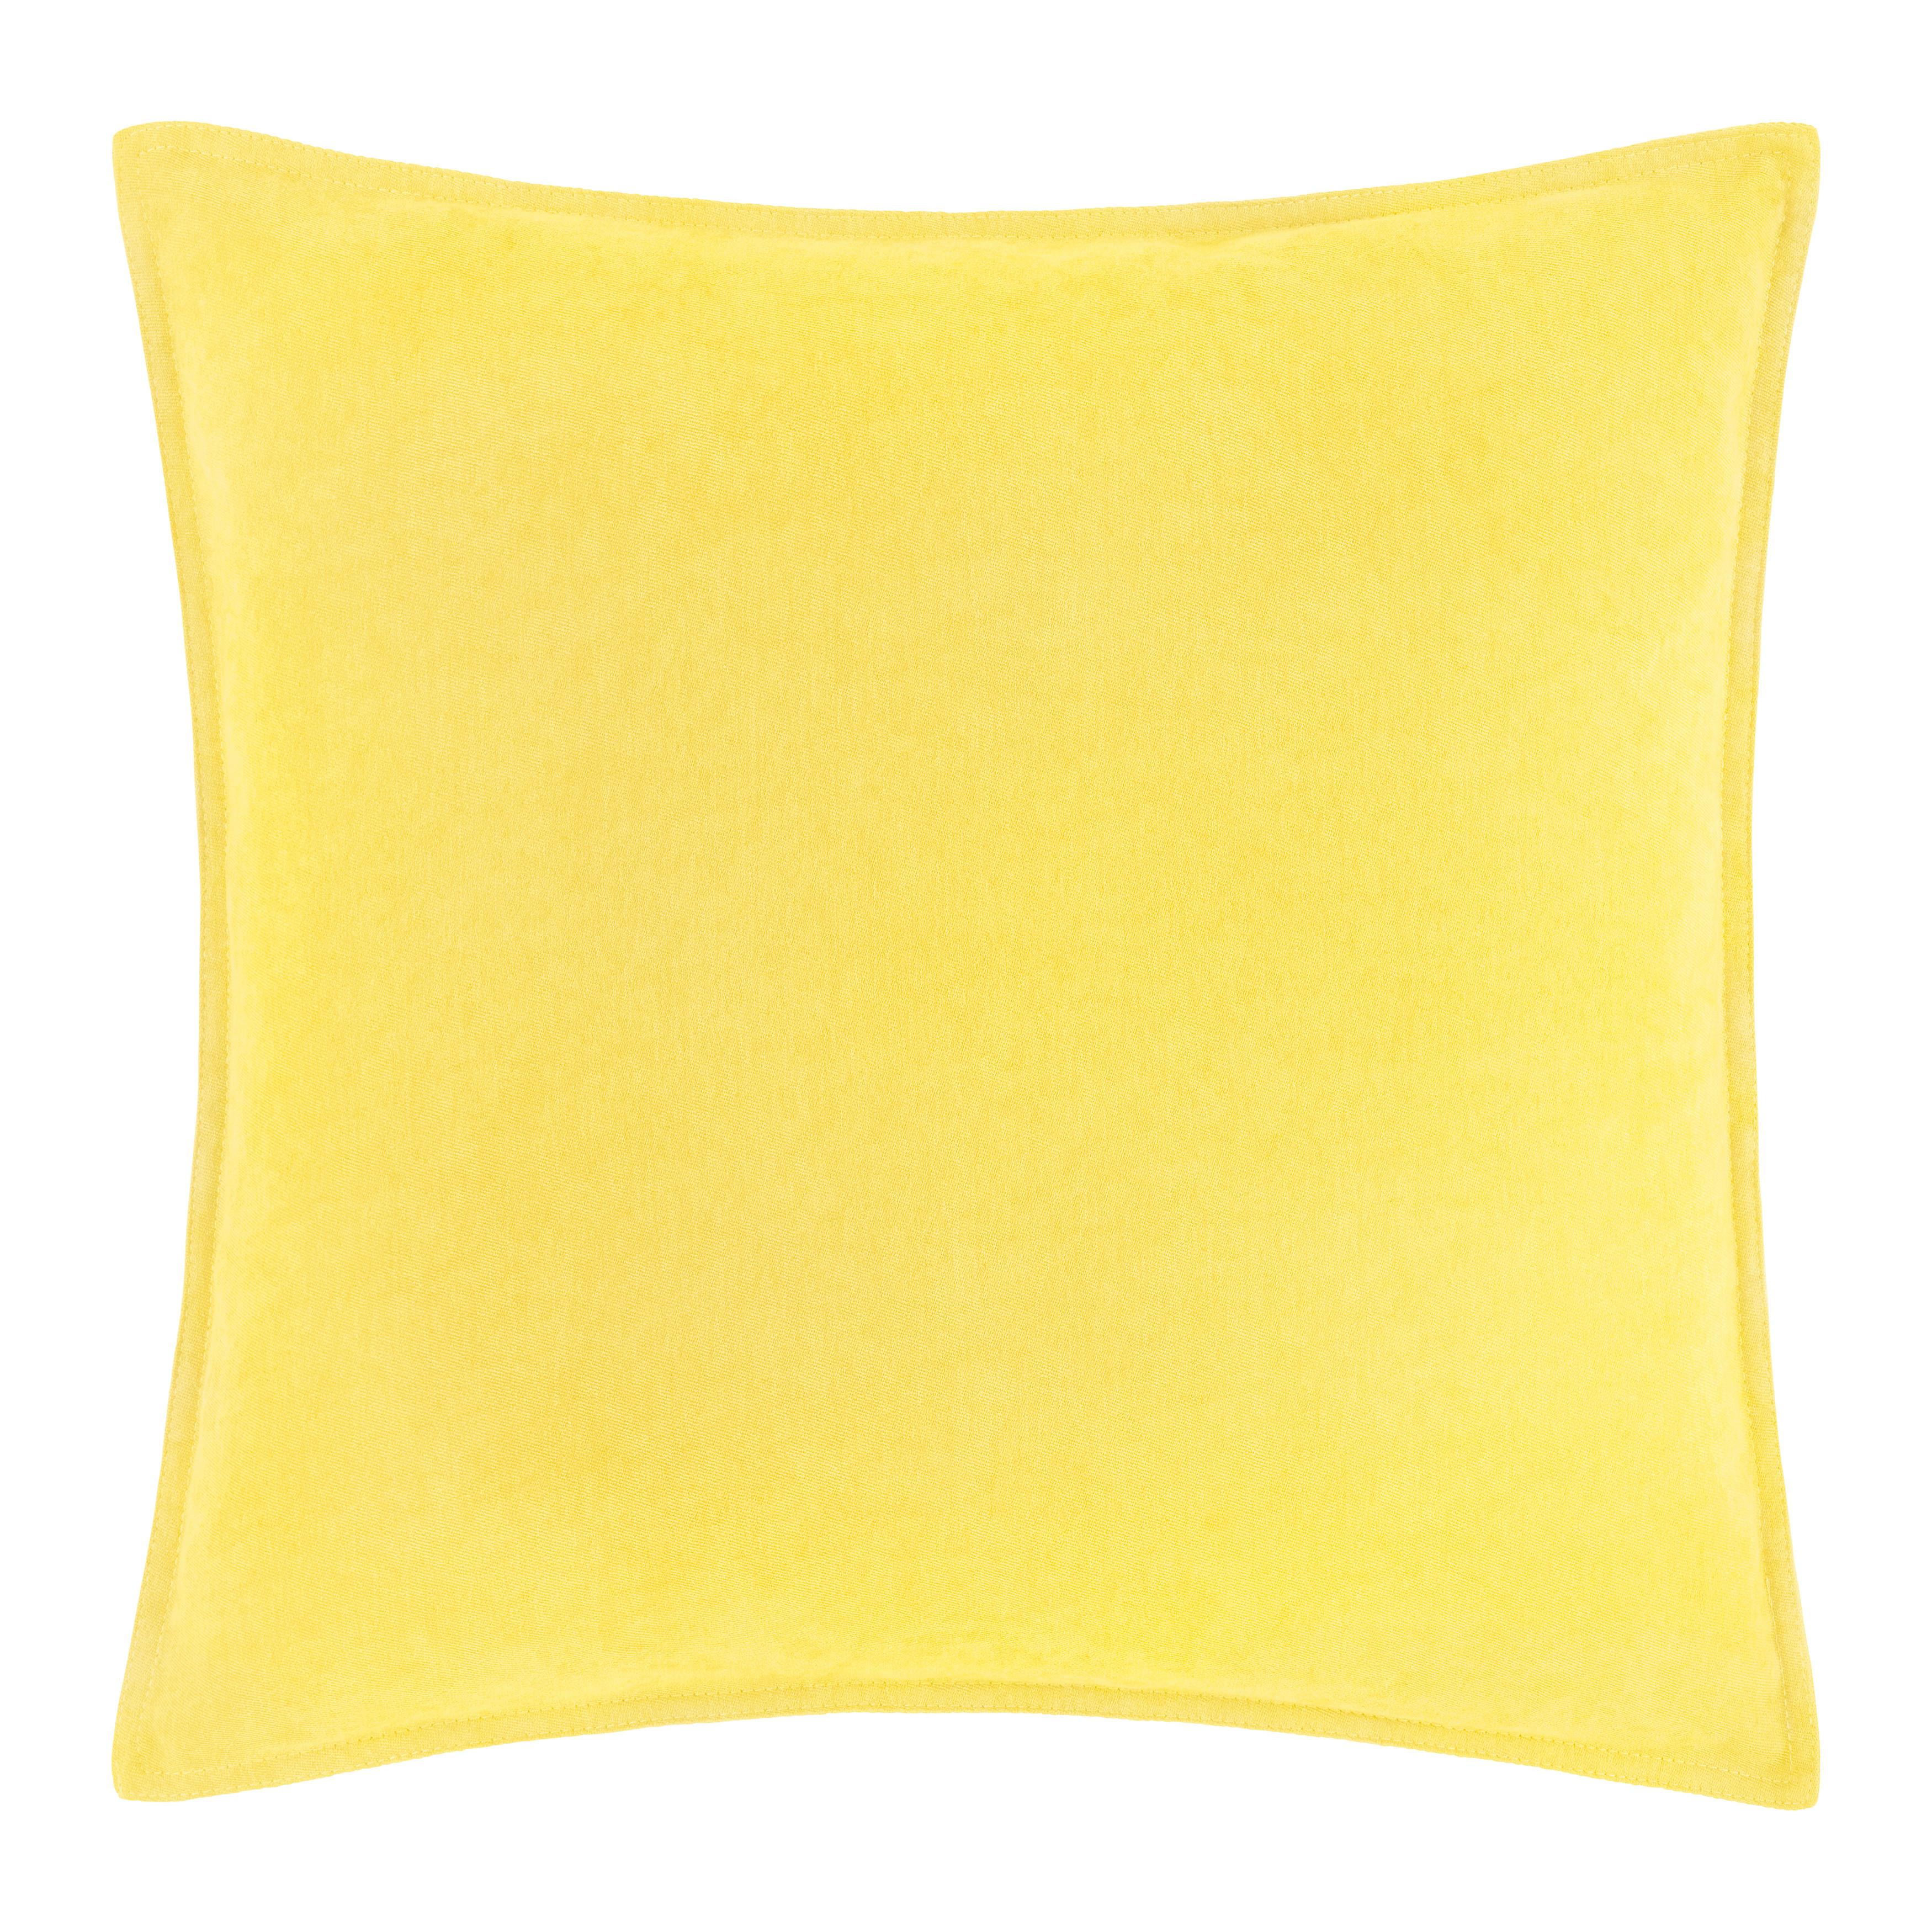 Dekorační Polštář Nathi, 45/45cm, Žlutá - žlutá, Konvenční, textil (45/45cm) - Modern Living